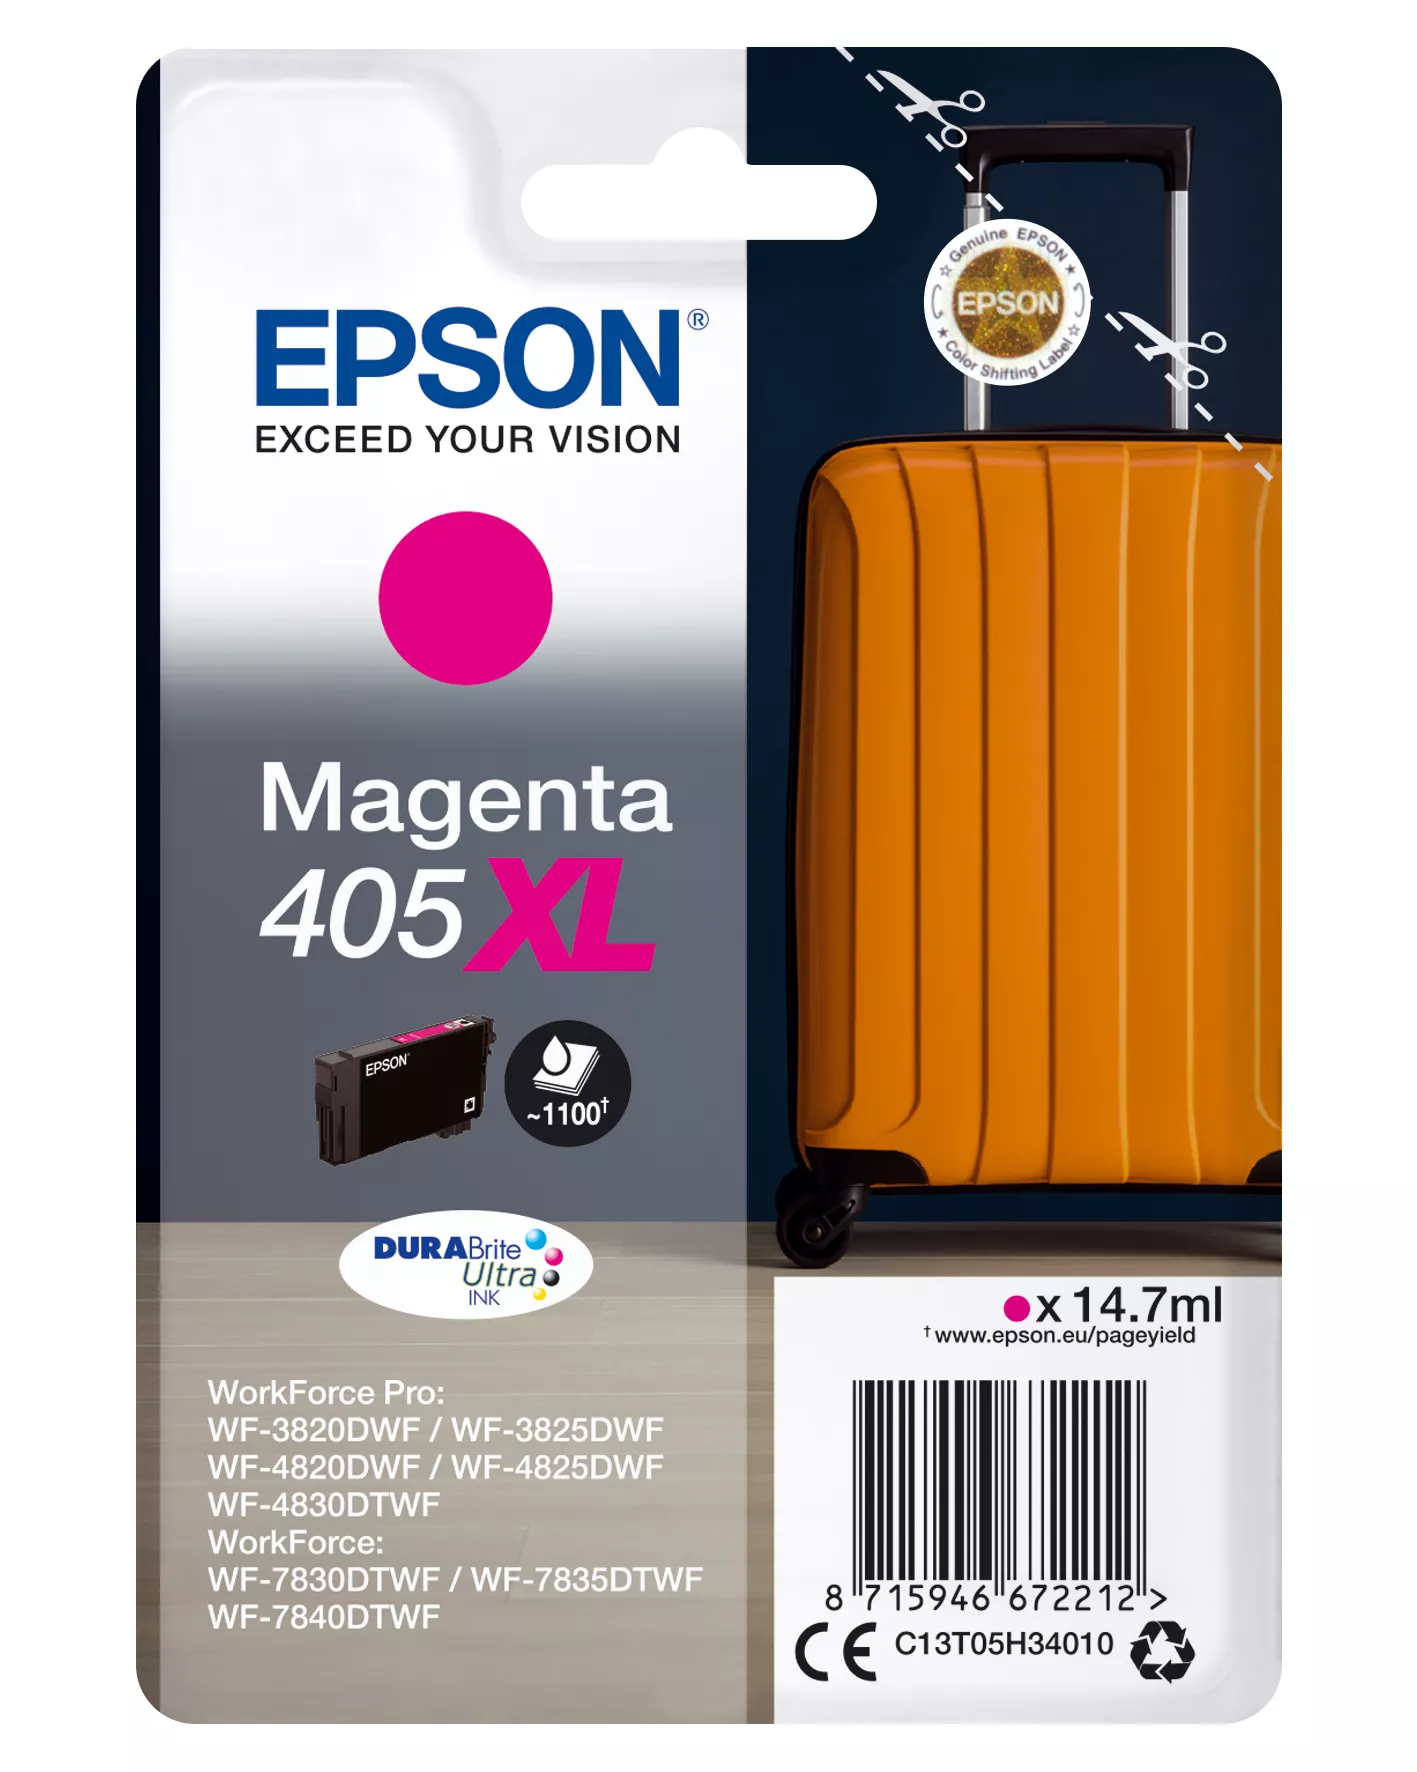 Achat EPSON Singlepack Magenta 405XL DURABrite Ultra Ink au meilleur prix